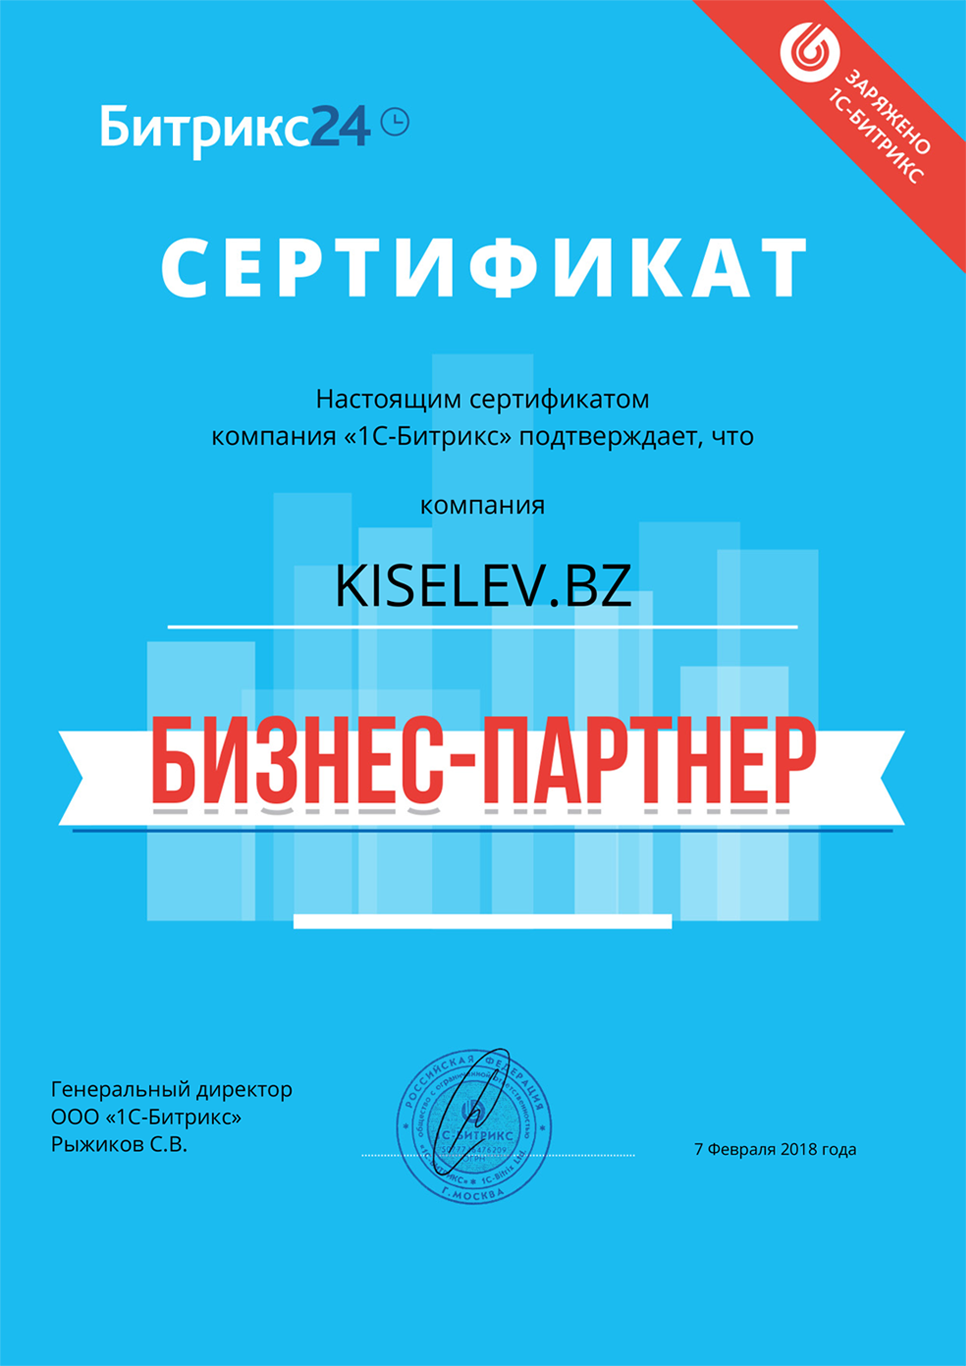 Сертификат партнёра по АМОСРМ в Никольском